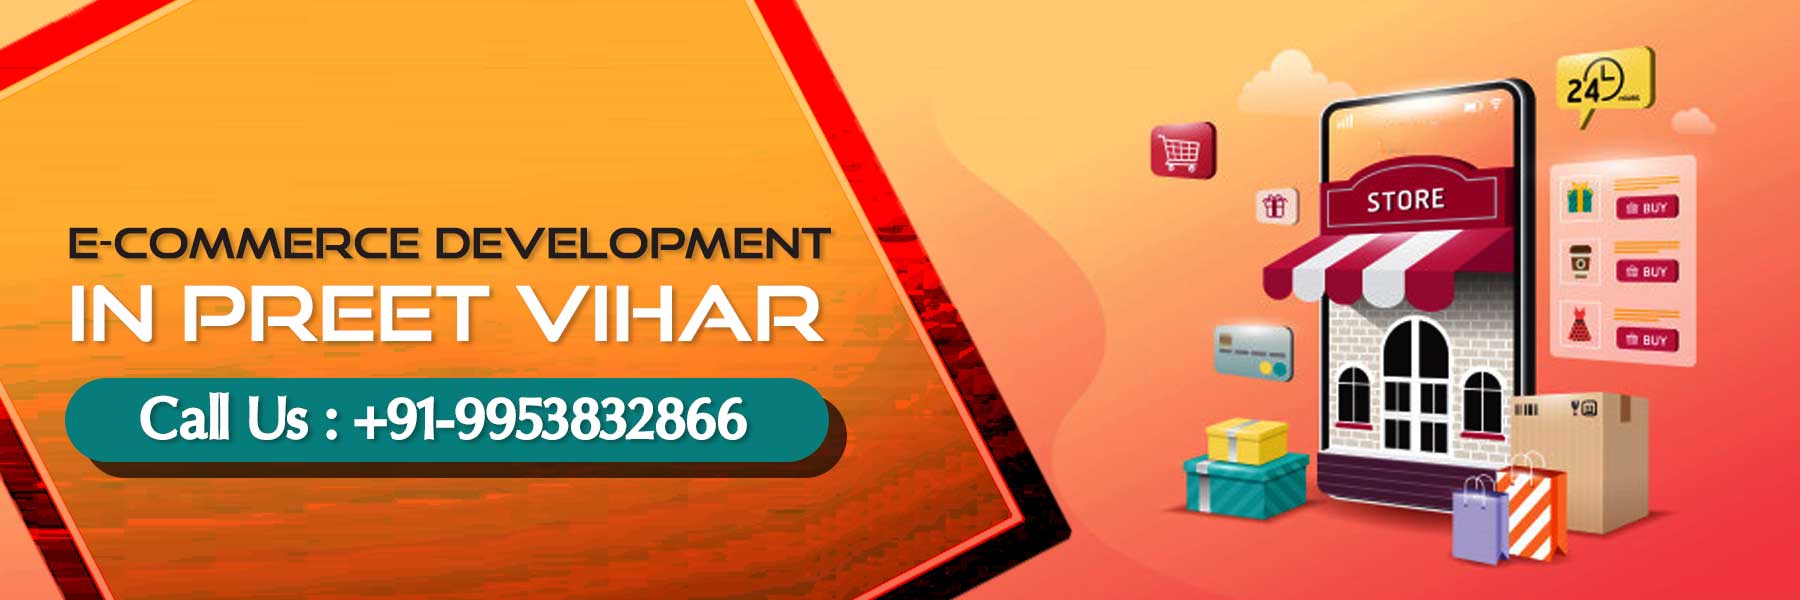 ecommerce development in Preet Vihar